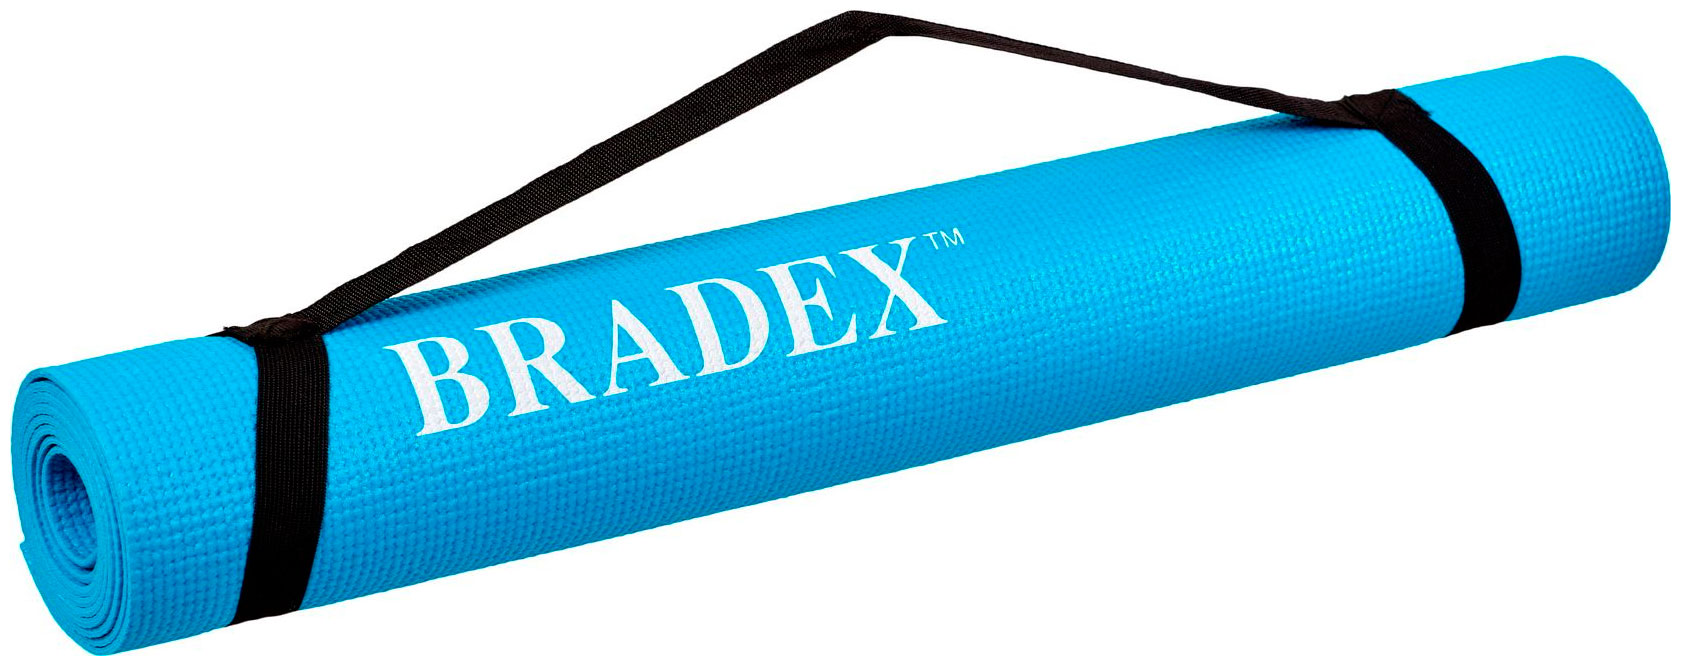 коврик bradex sf 0693 173х61 см бирюзовый 0 3 см Коврик для йоги и фитнеса Bradex SF 0693 173*61*03 см бирюзовый с переноской